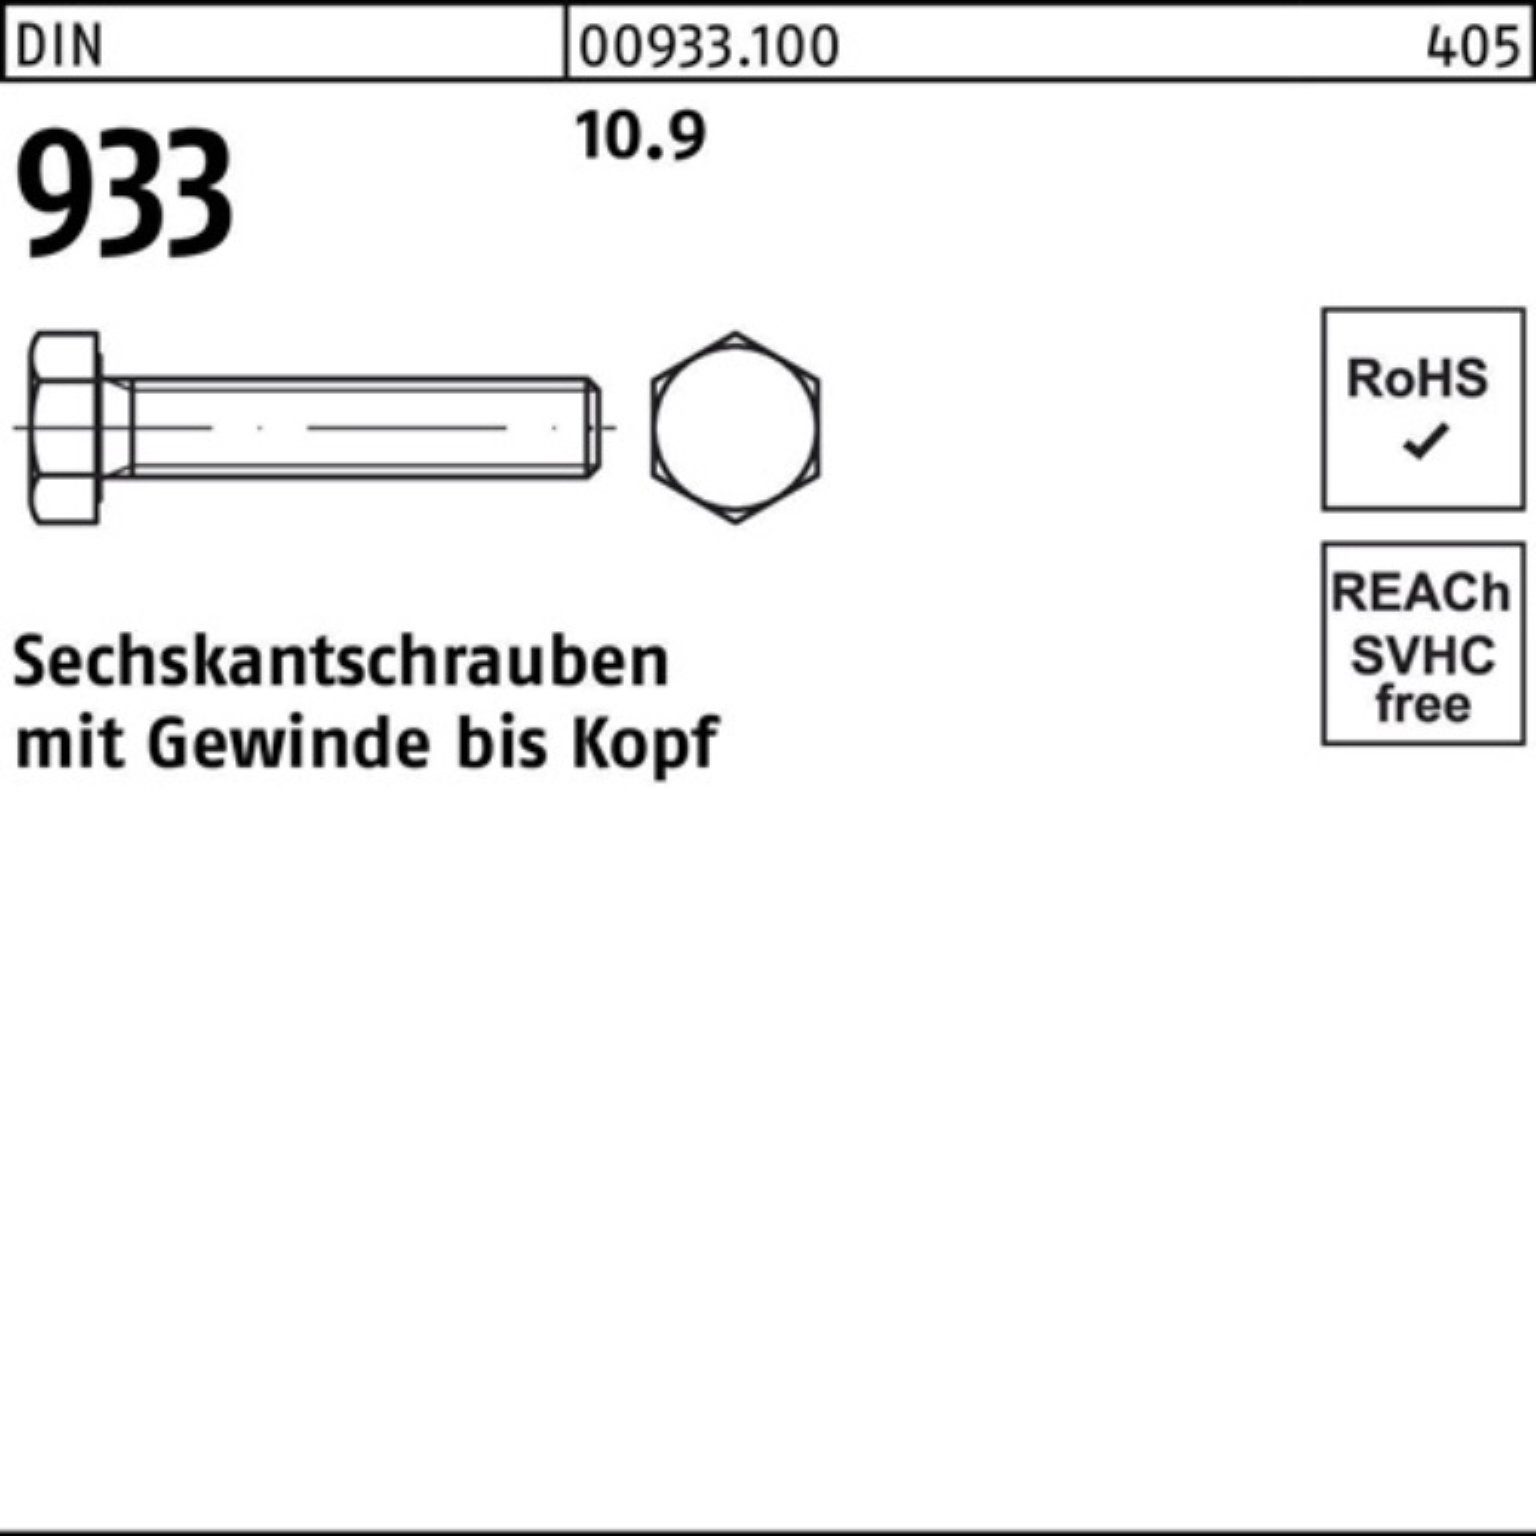 DIN 150 M27x Sechskantschraube Sechskantschraube 933 Reyher 1 DIN 10.9 Stück Pack VG 933 100er